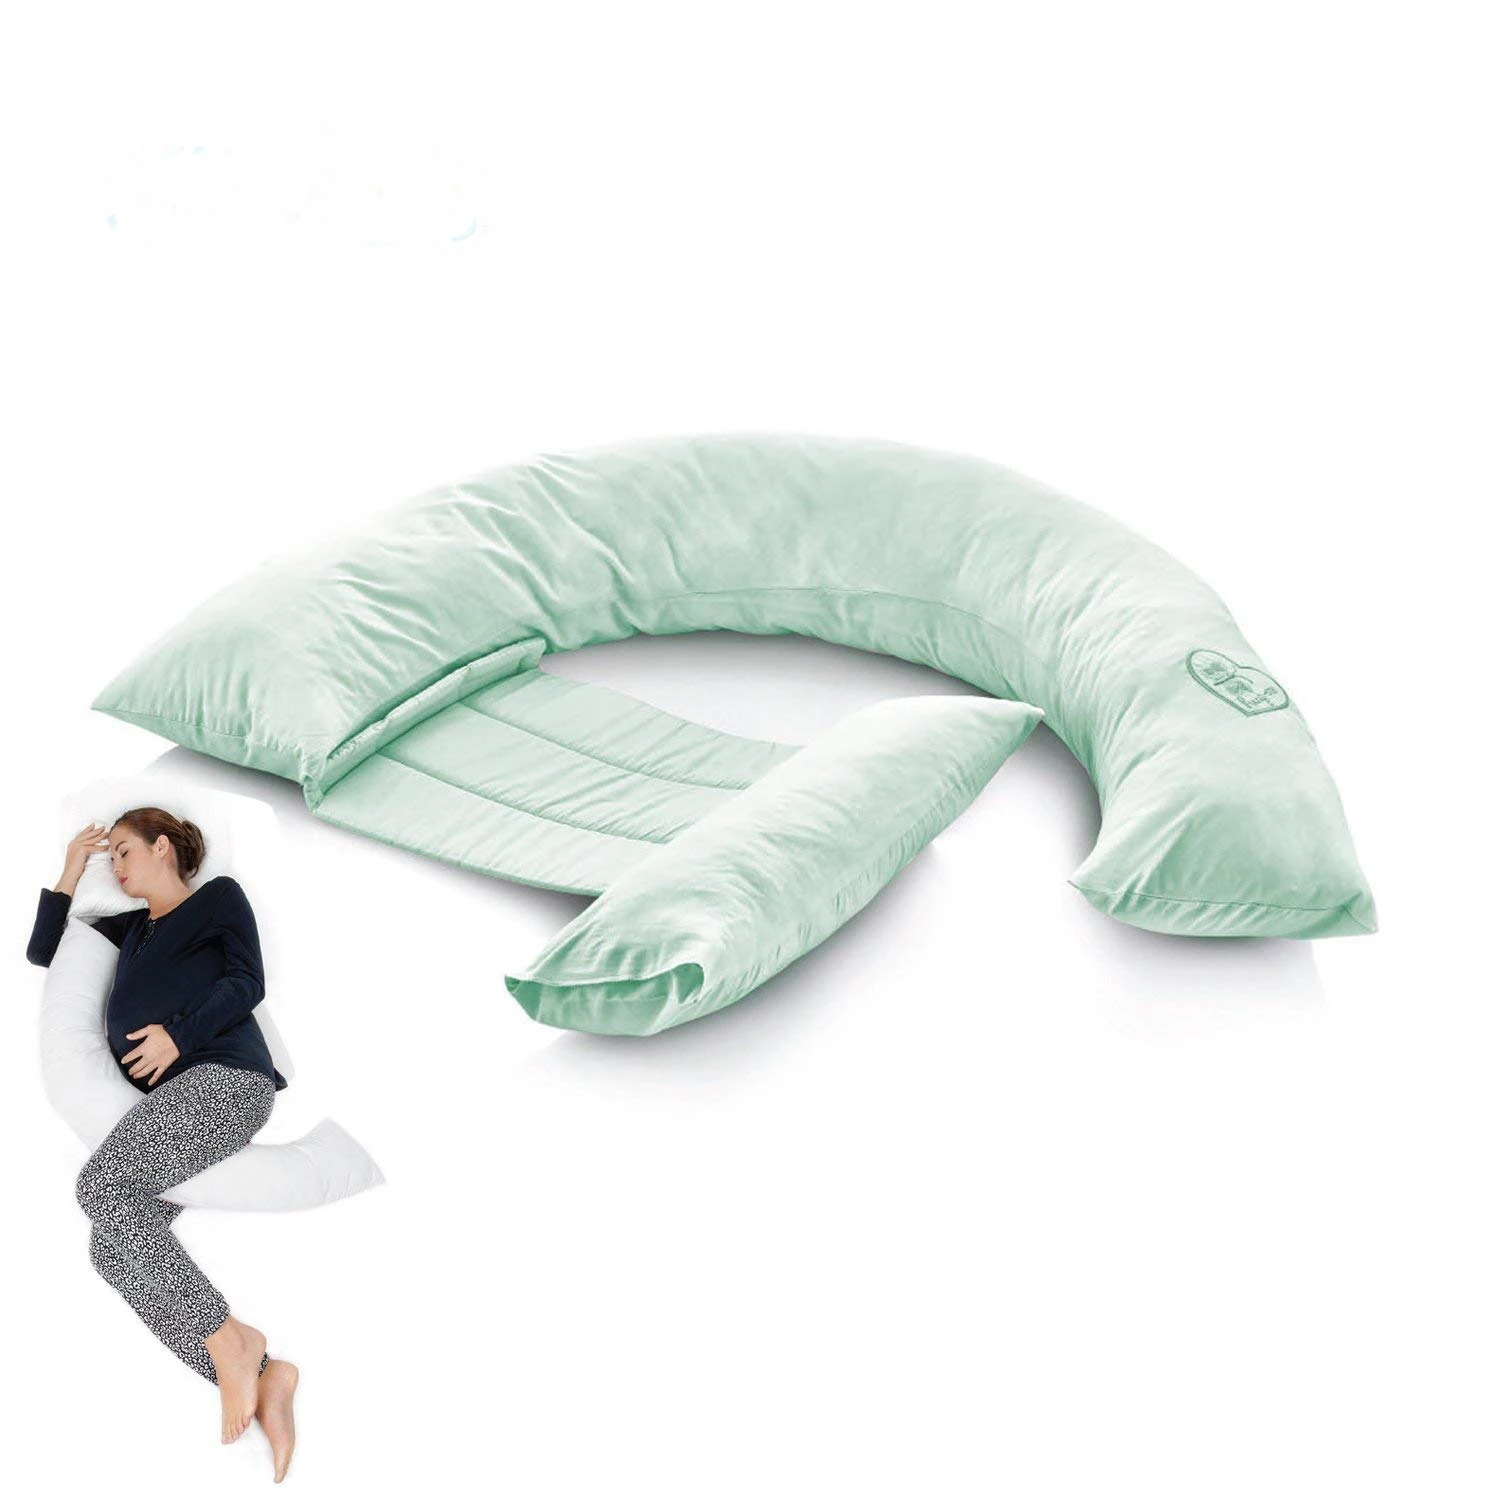 Jastuk za trudnice zeleni - pomaže pri spavanju a posle i dojenju beba